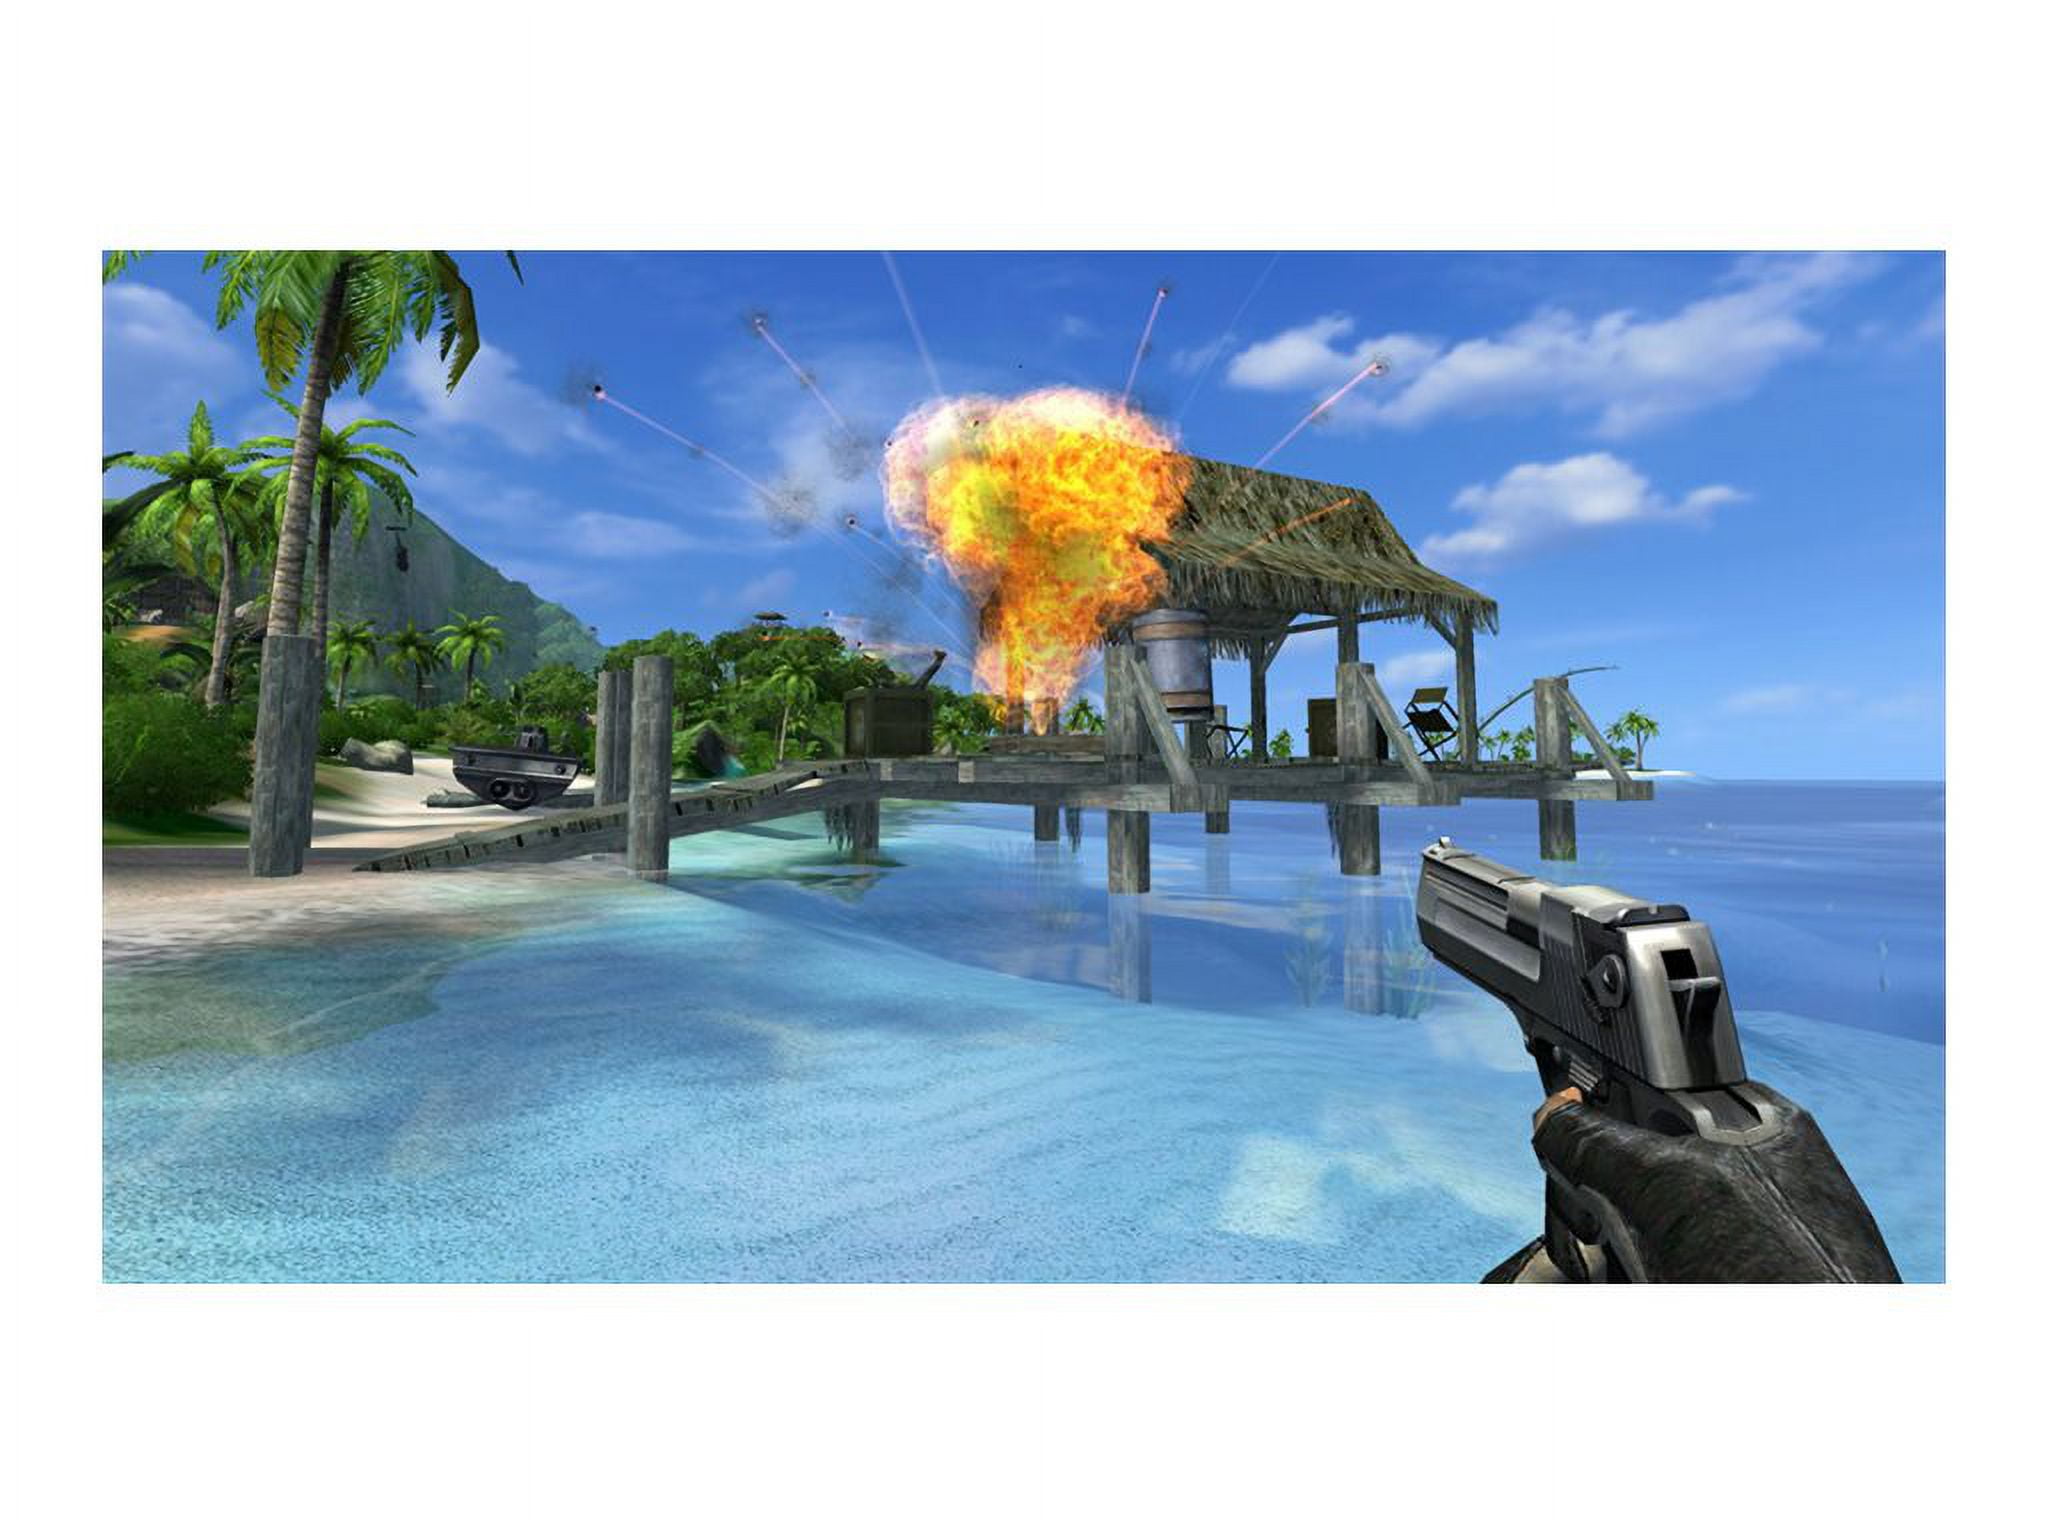 Far Cry 2 Videos for PlayStation 3 - GameFAQs